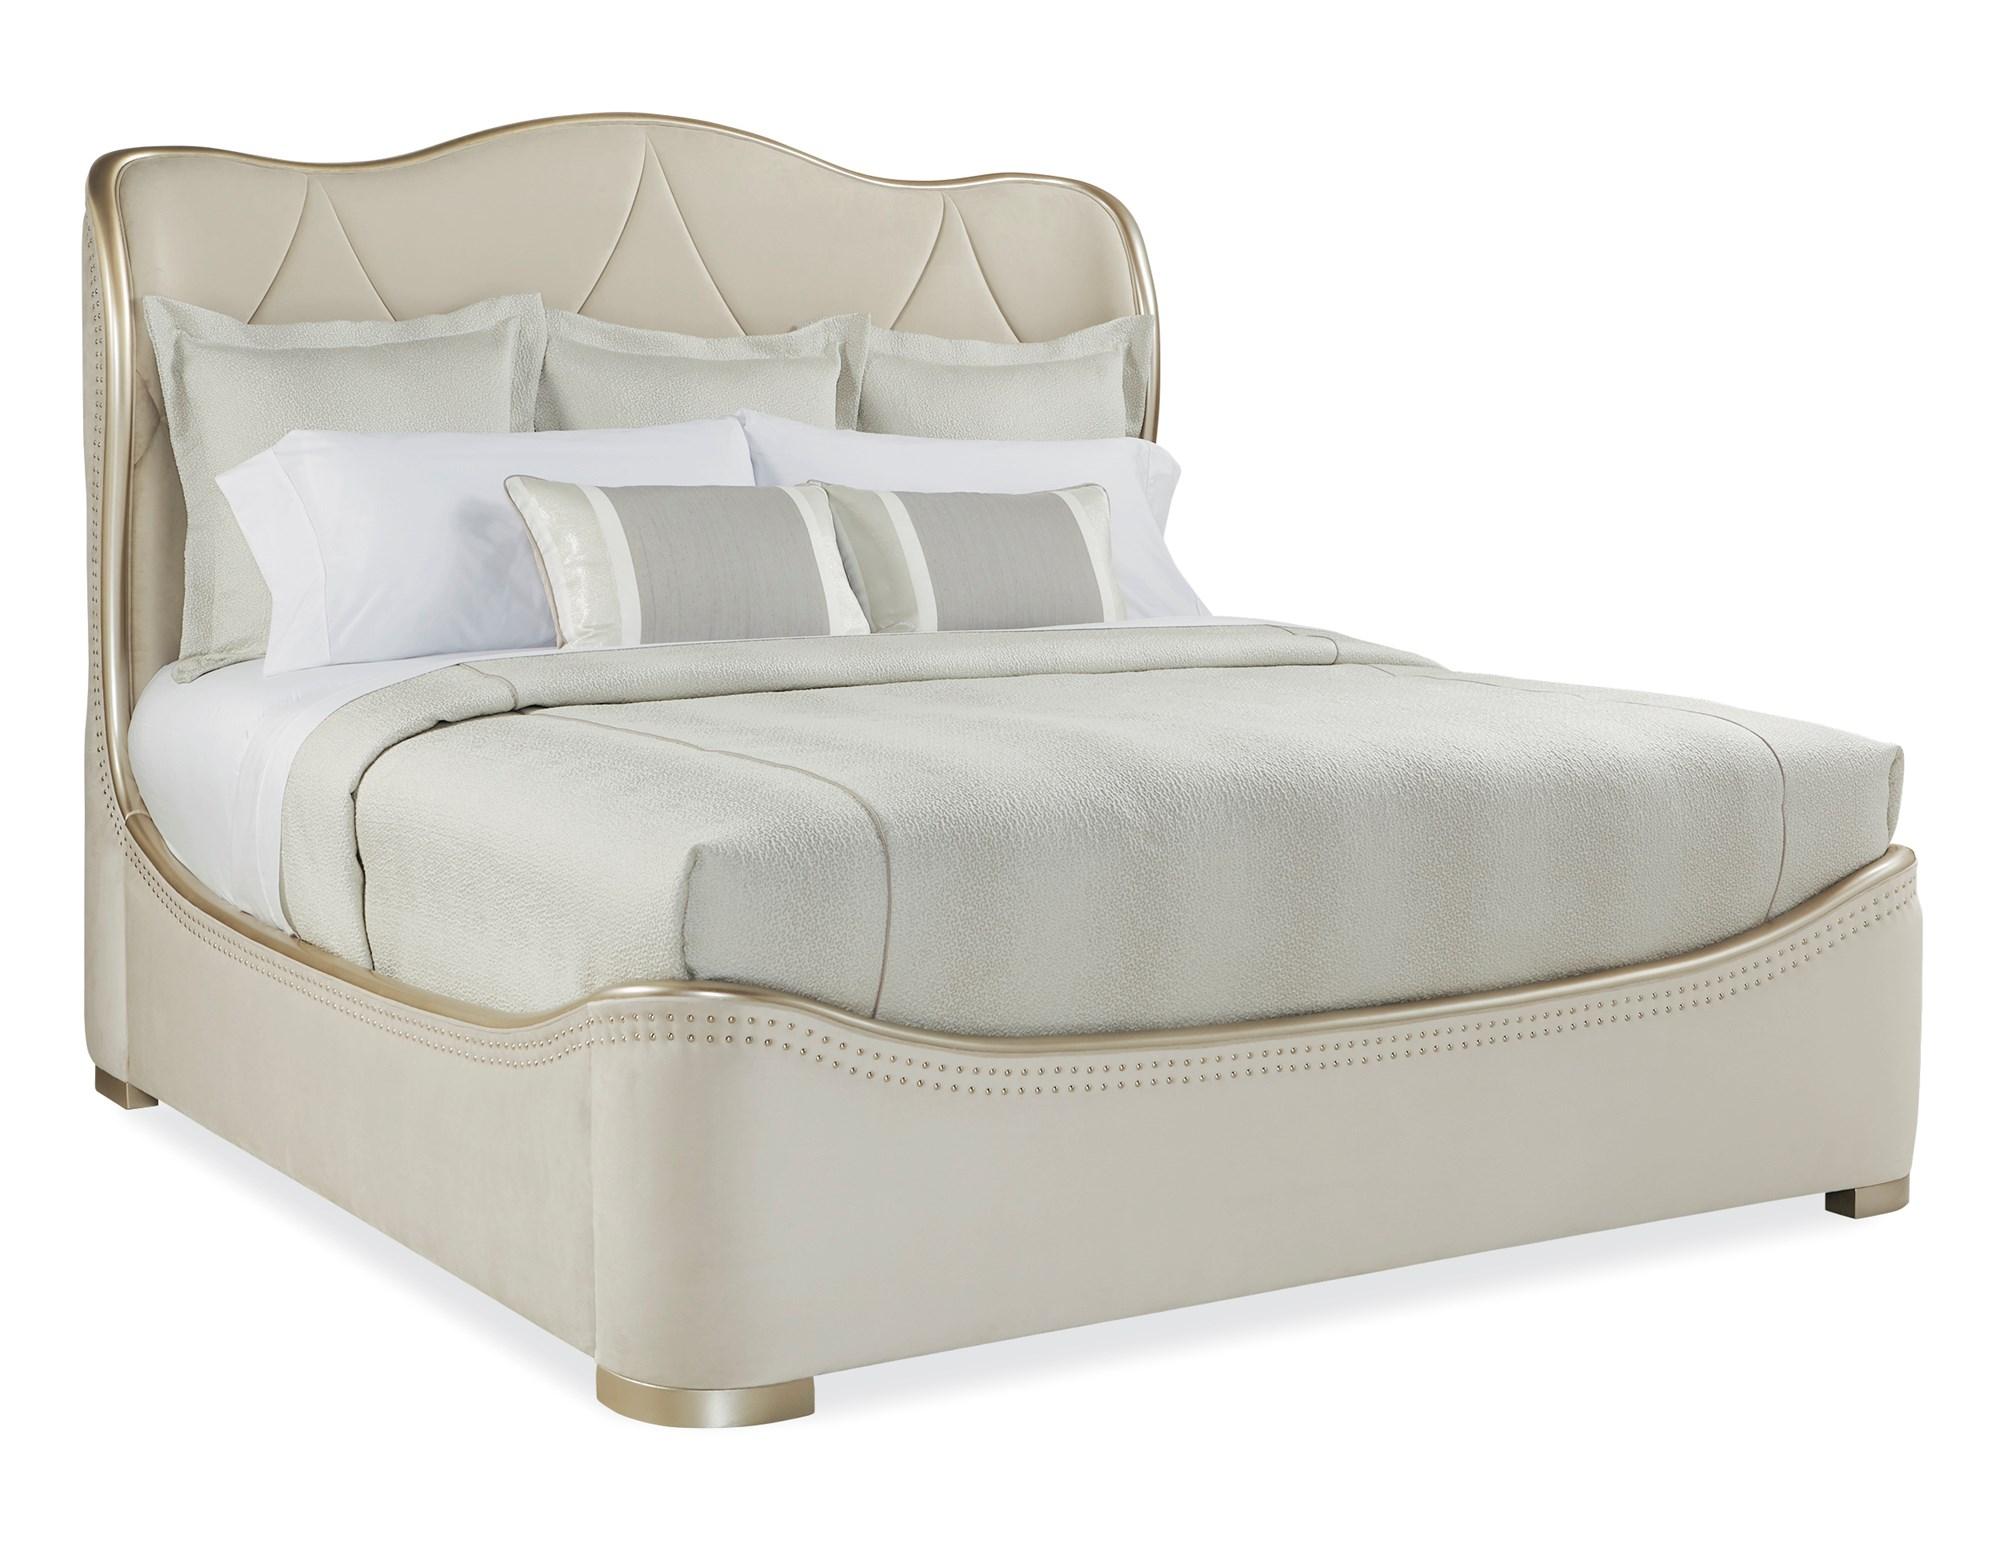 Contemporary Sleigh Bed ADELA QUEEN BED C013-016-102 in Cream Velvet